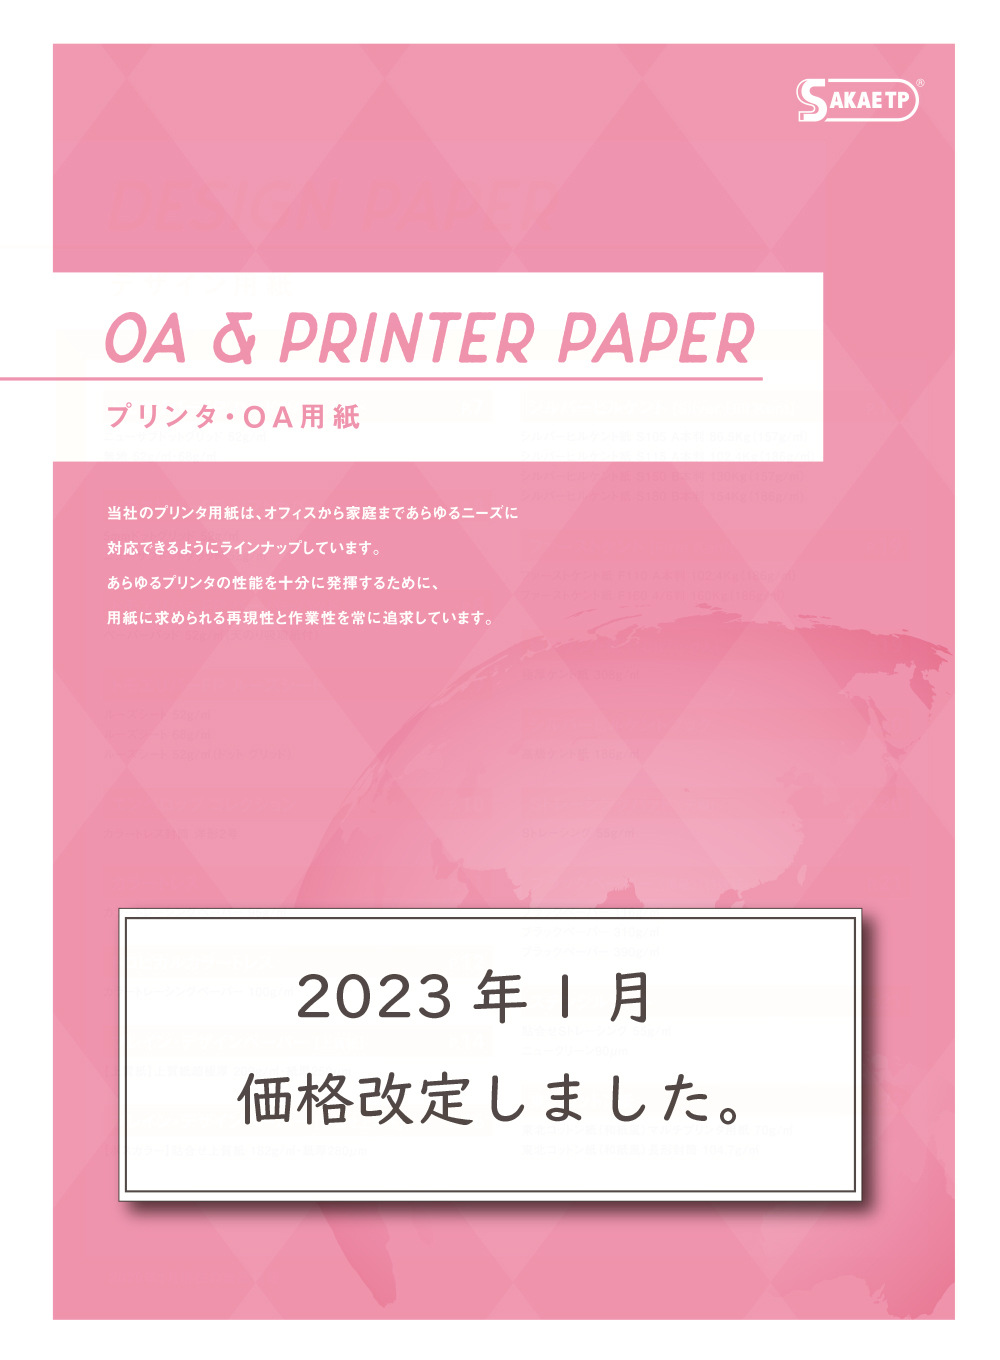 プリンター・OA用紙 カタログ表紙